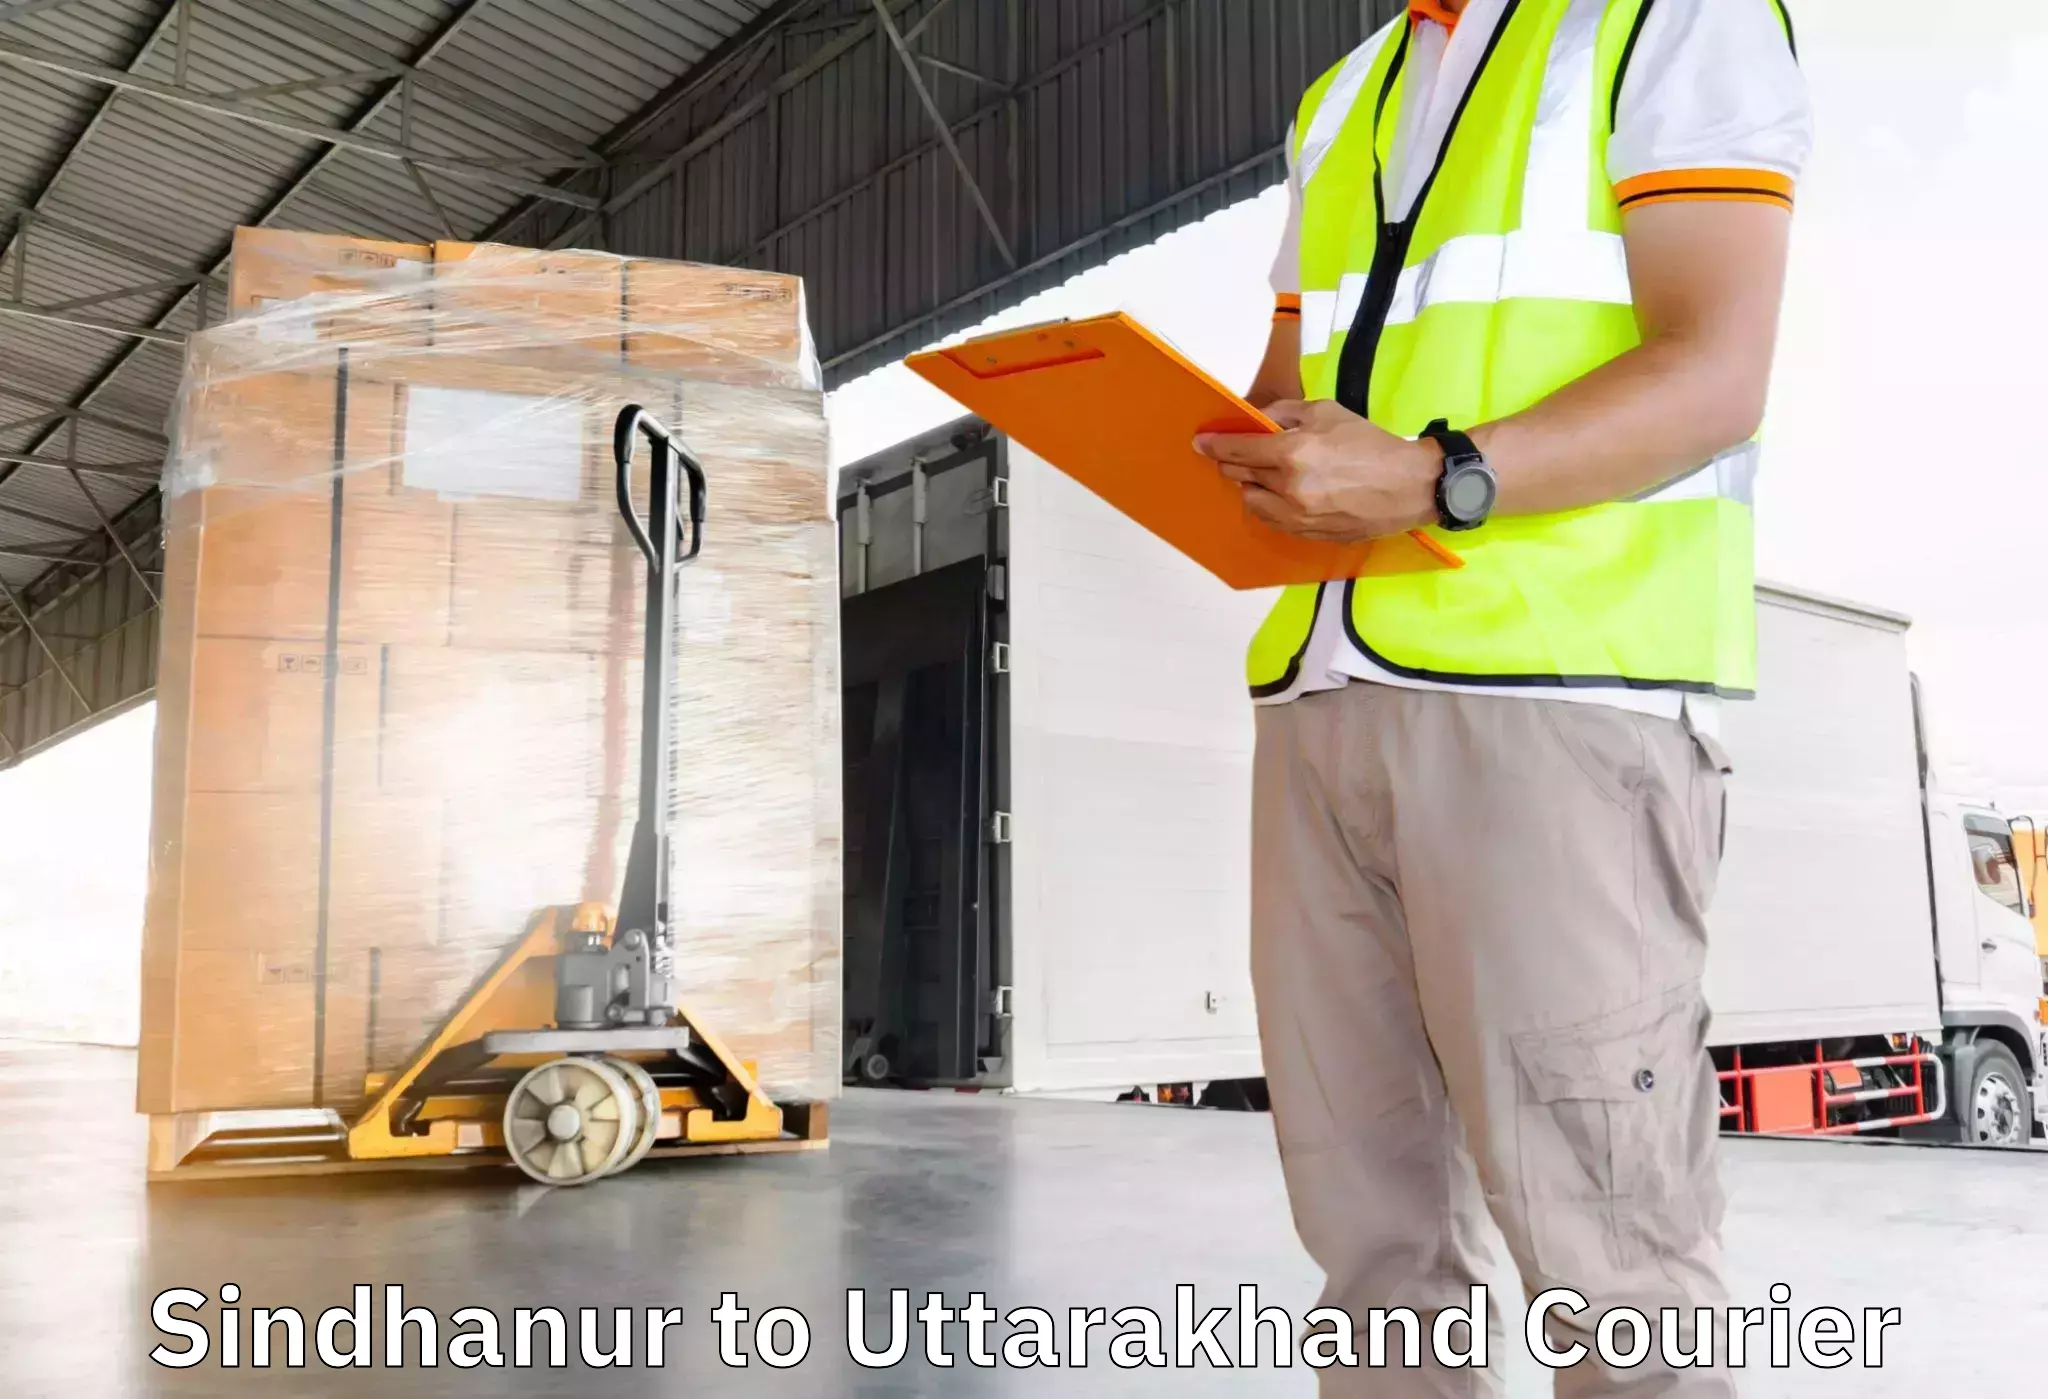 Furniture transport company Sindhanur to Lansdowne